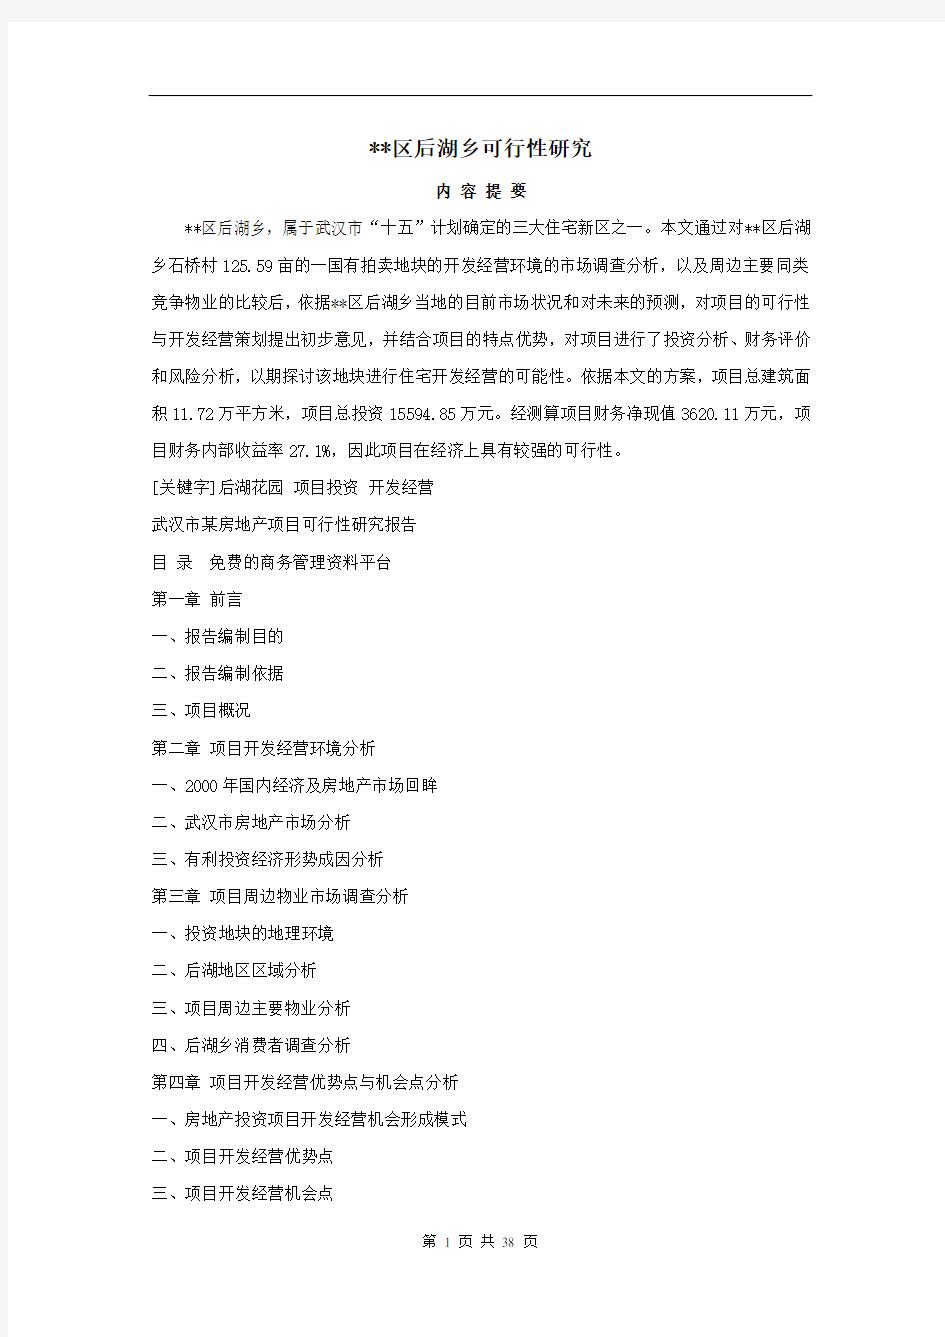 2005年武汉某鞋城可行性研究报告(37页)_secret